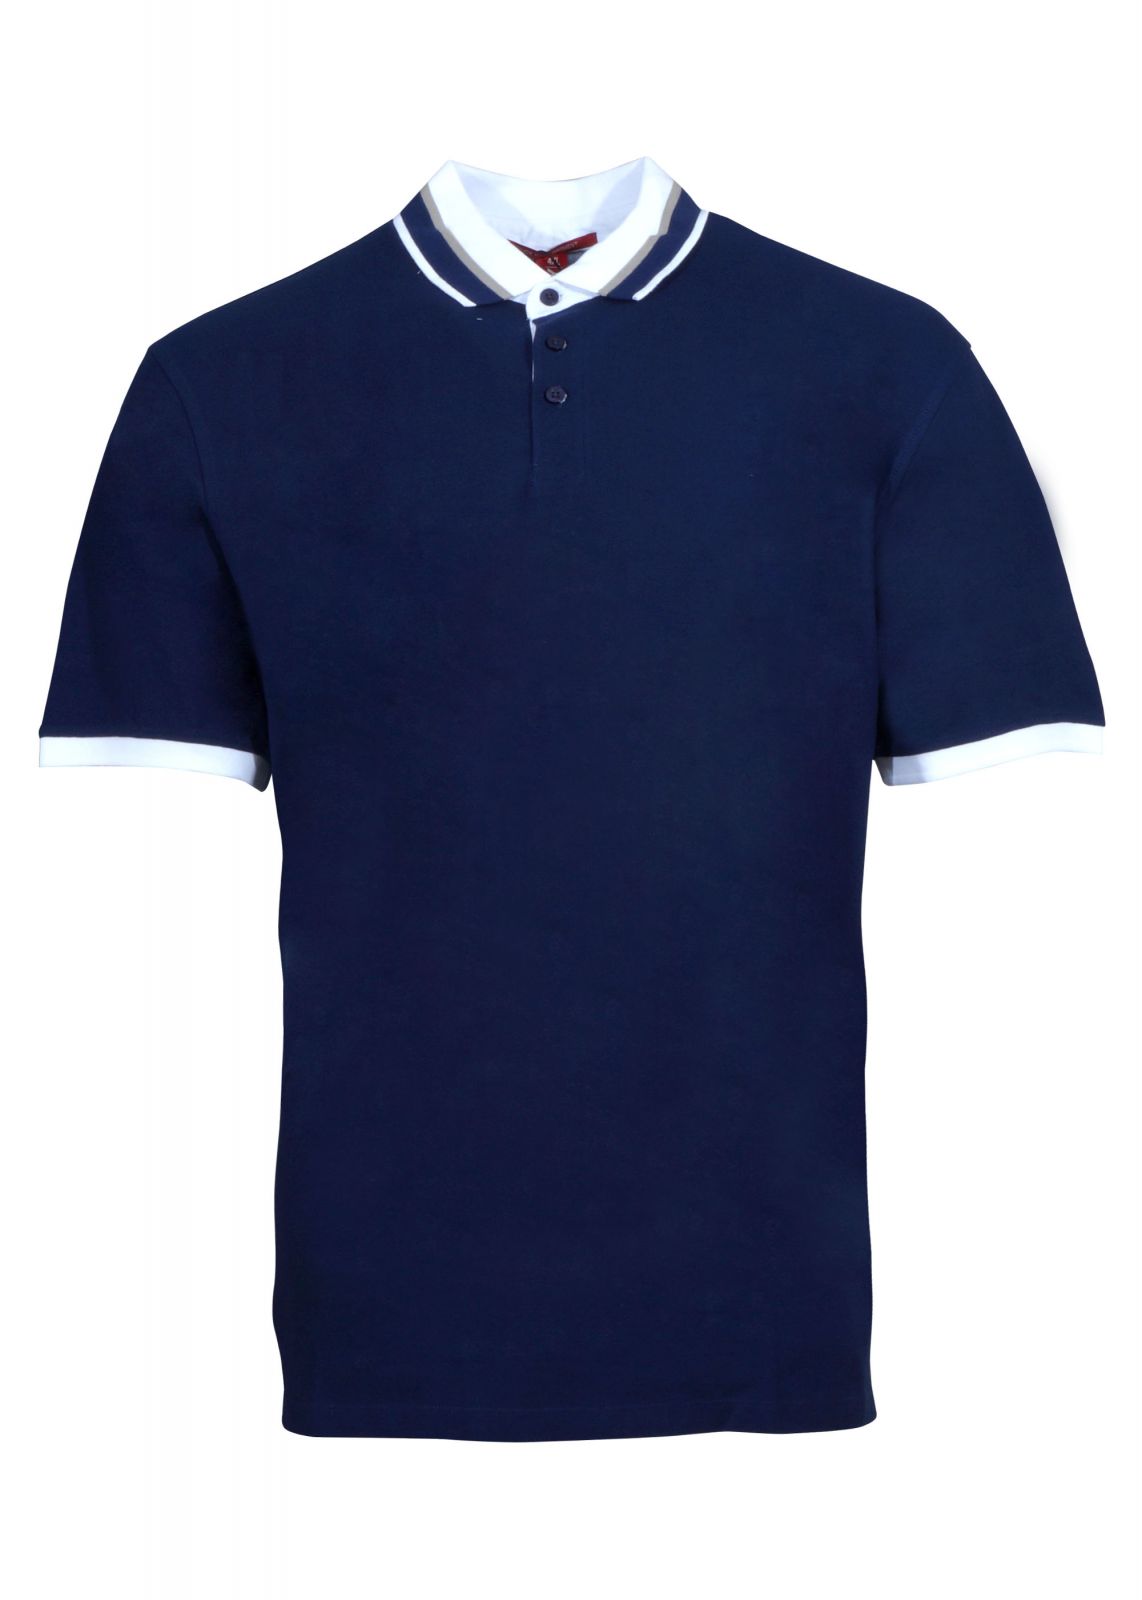 Αντρική μπλούζα dsplay με γιακά κοντό μανίκι. Oversize Collection. NAVY 3214-17971